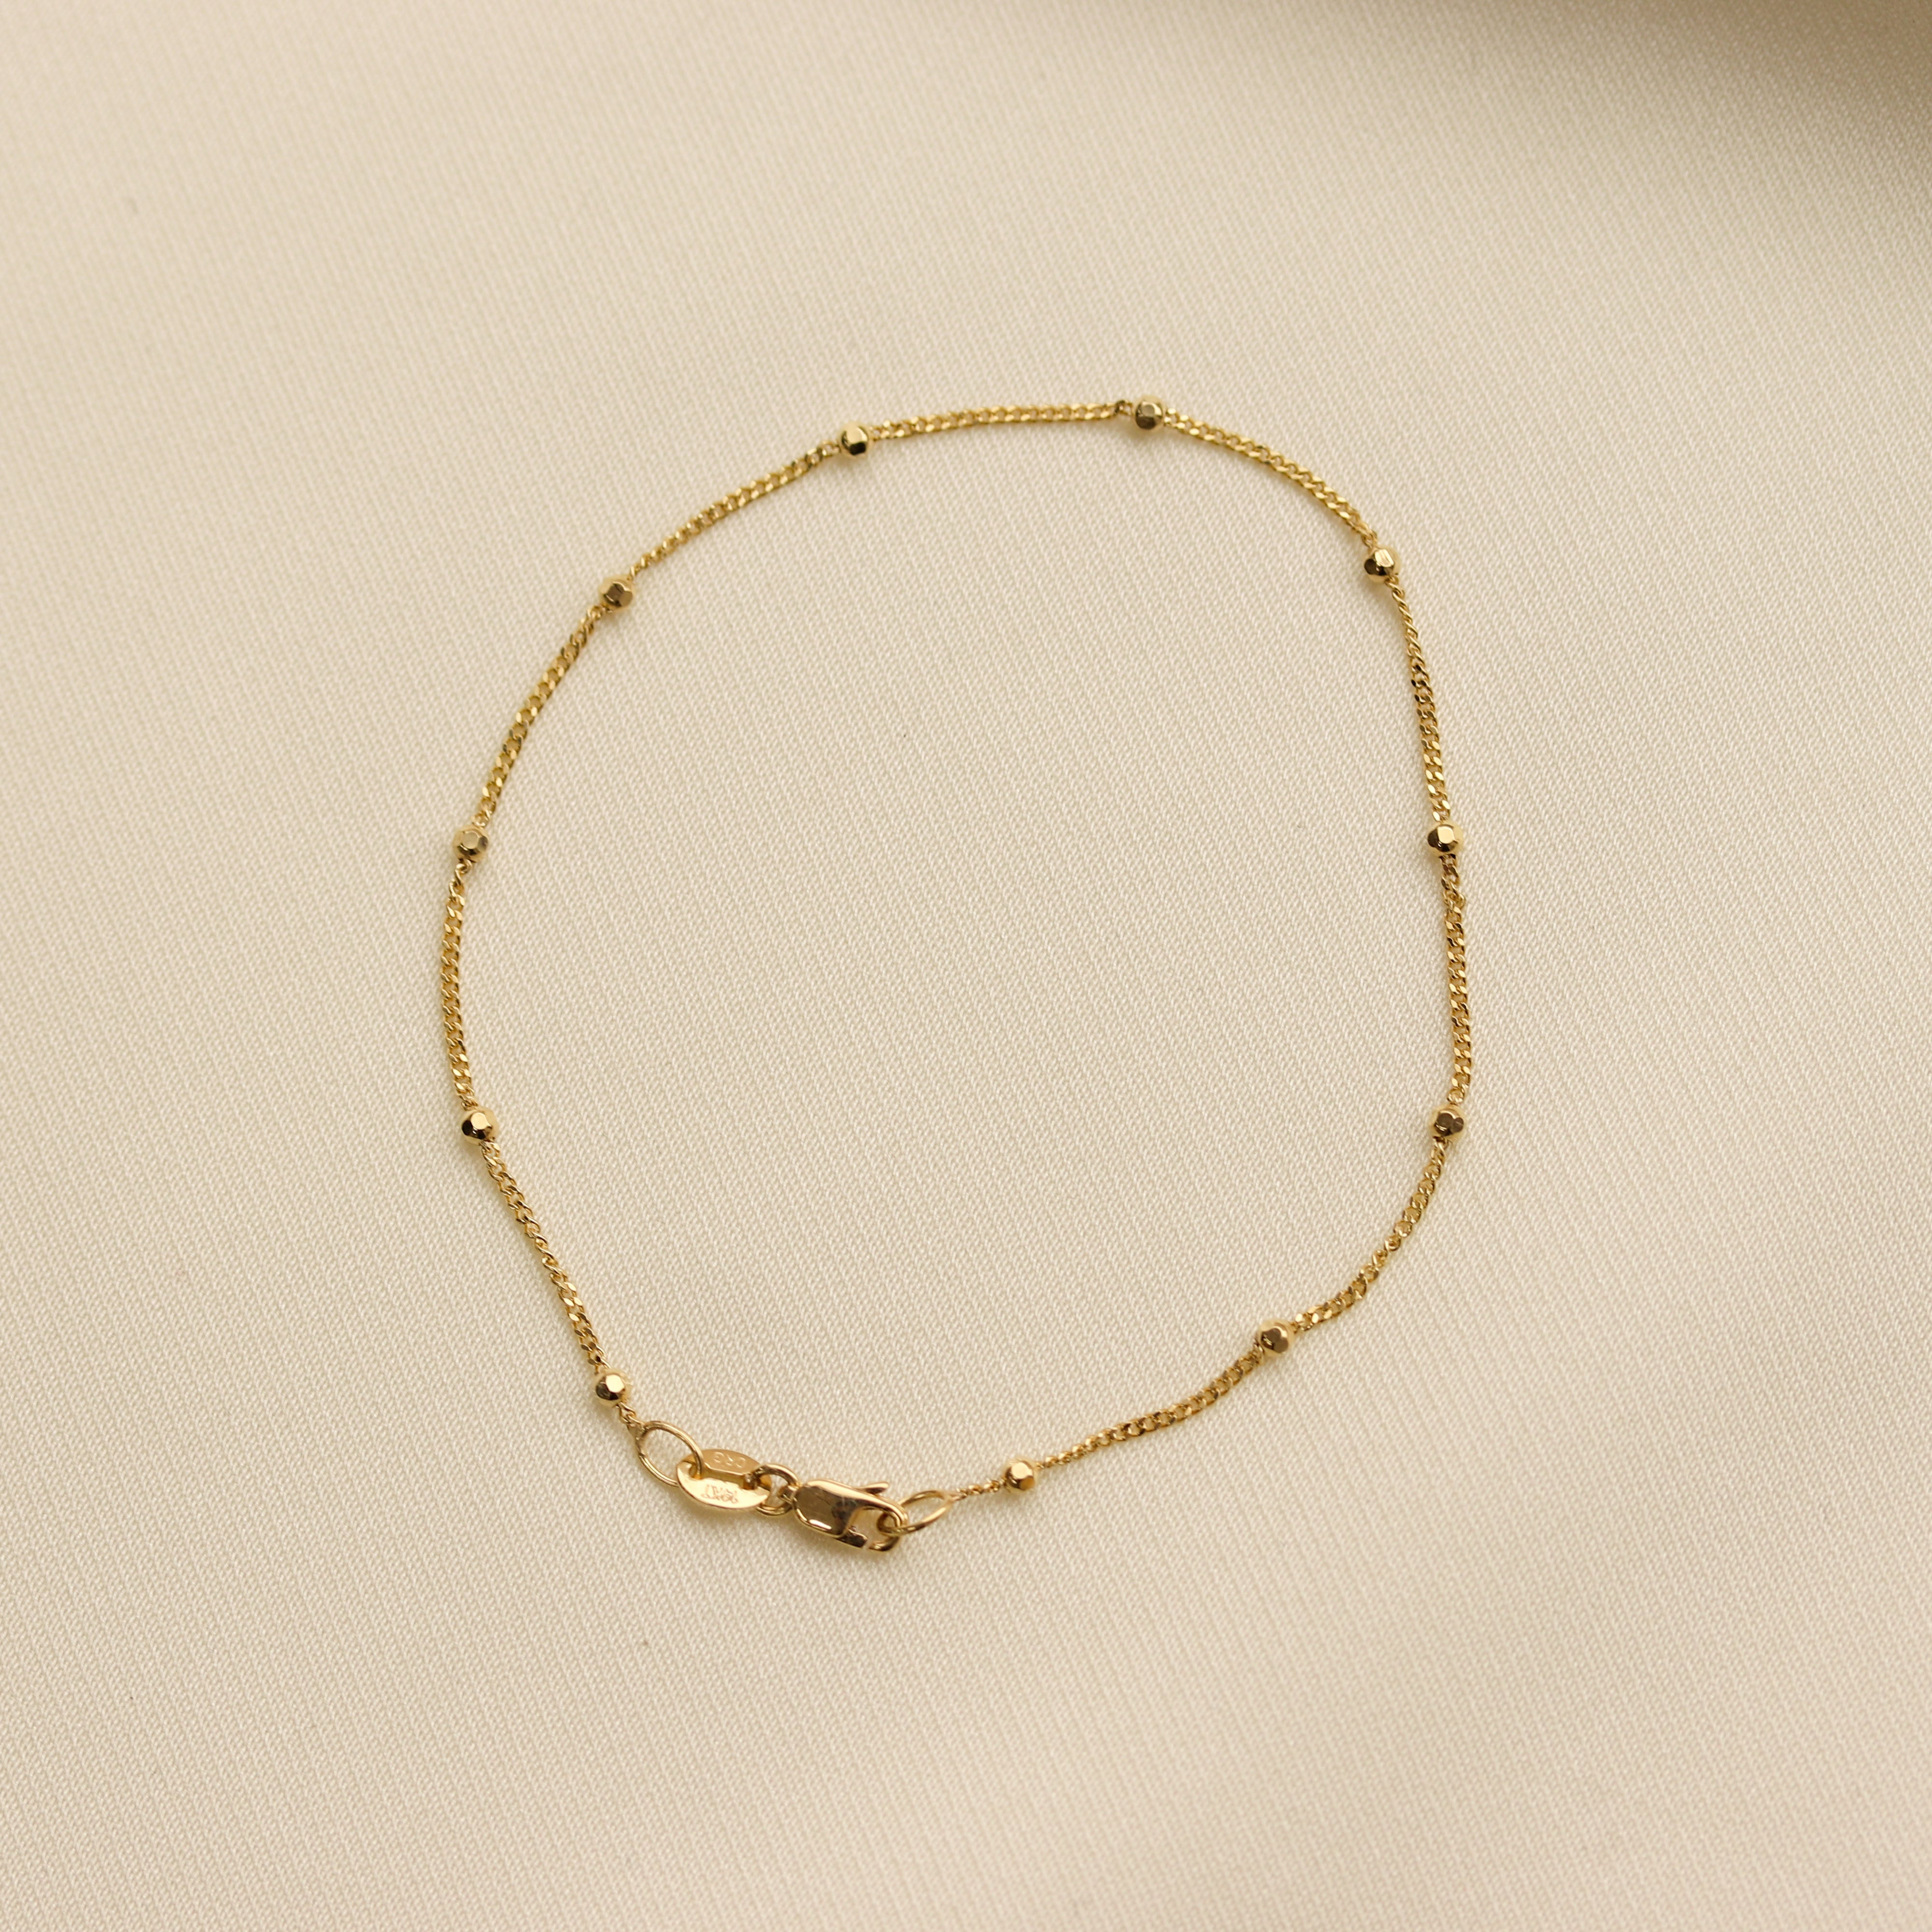 Simple and Unique Gold Bracelet